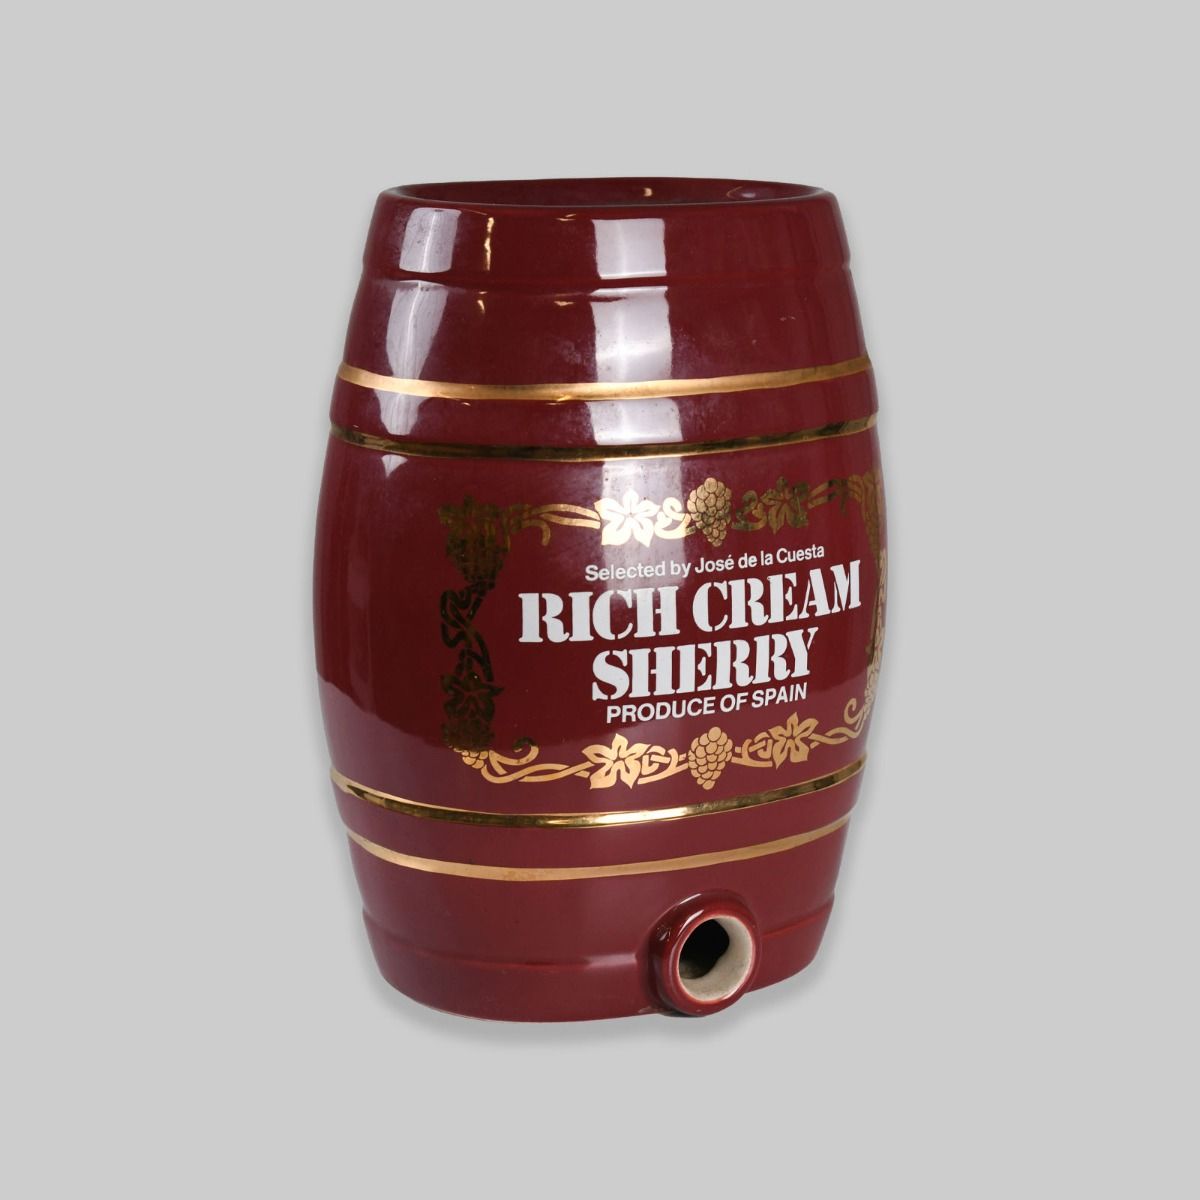 Vintage Royal Norfolk Jose de la Cuesta Rich Cream Sherry Barrel